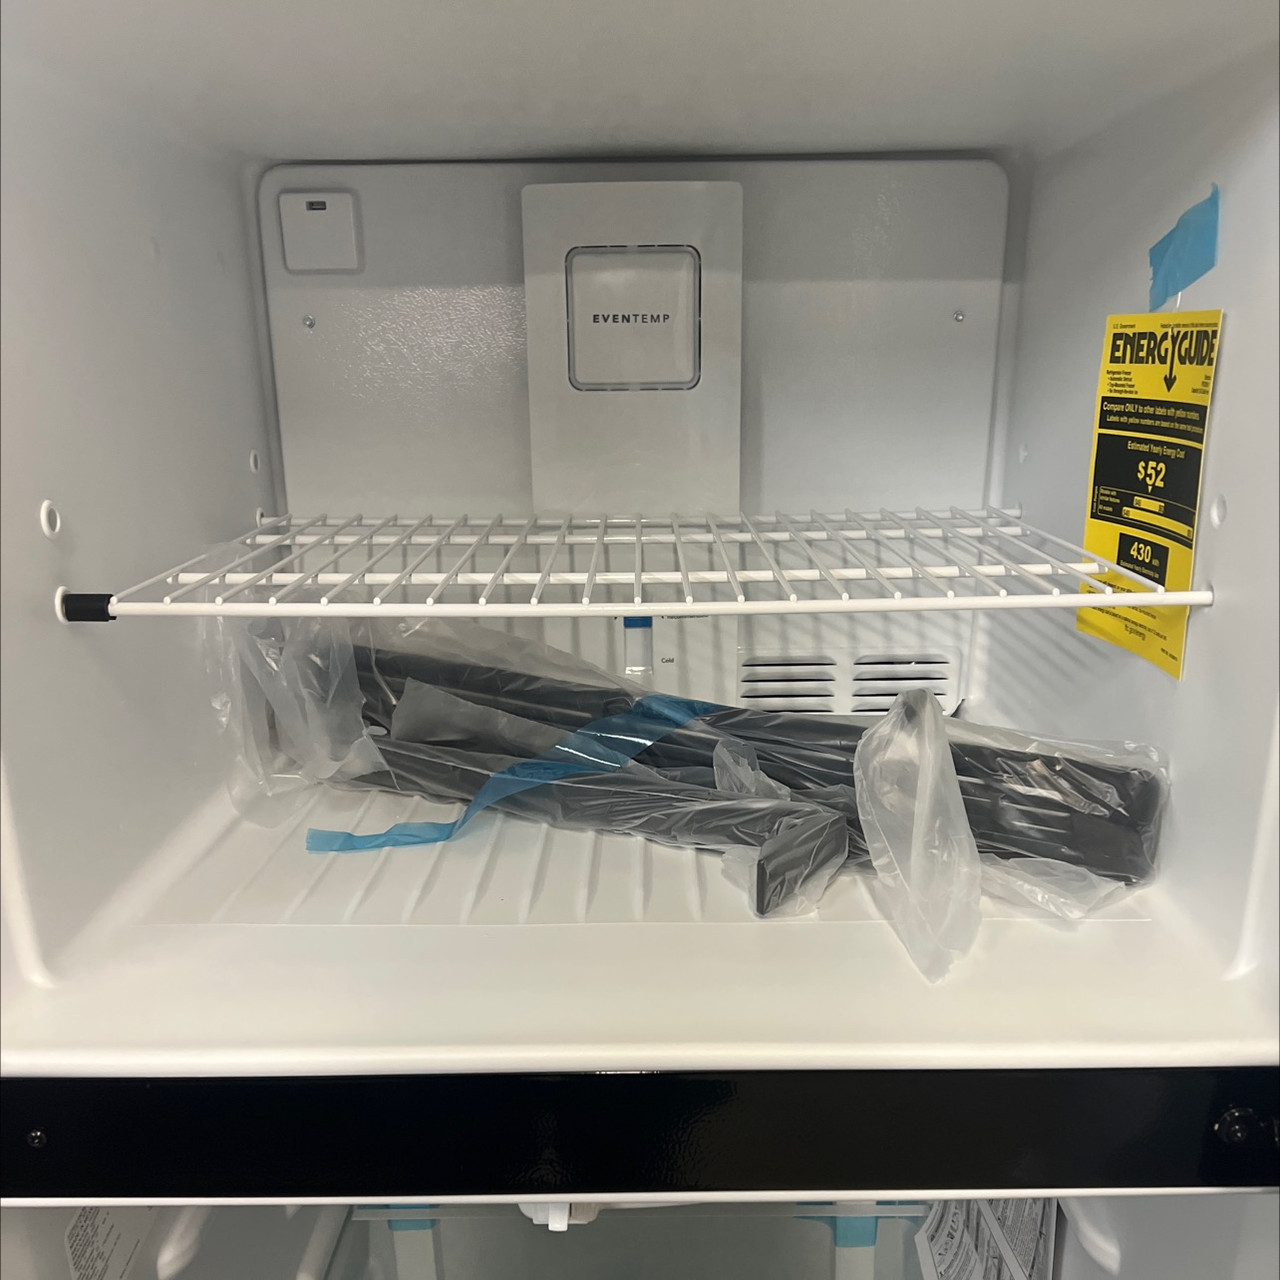 Frigidaire FRTD2021AW 20.5 cu. ft. Top Freezer Refrigerator - White